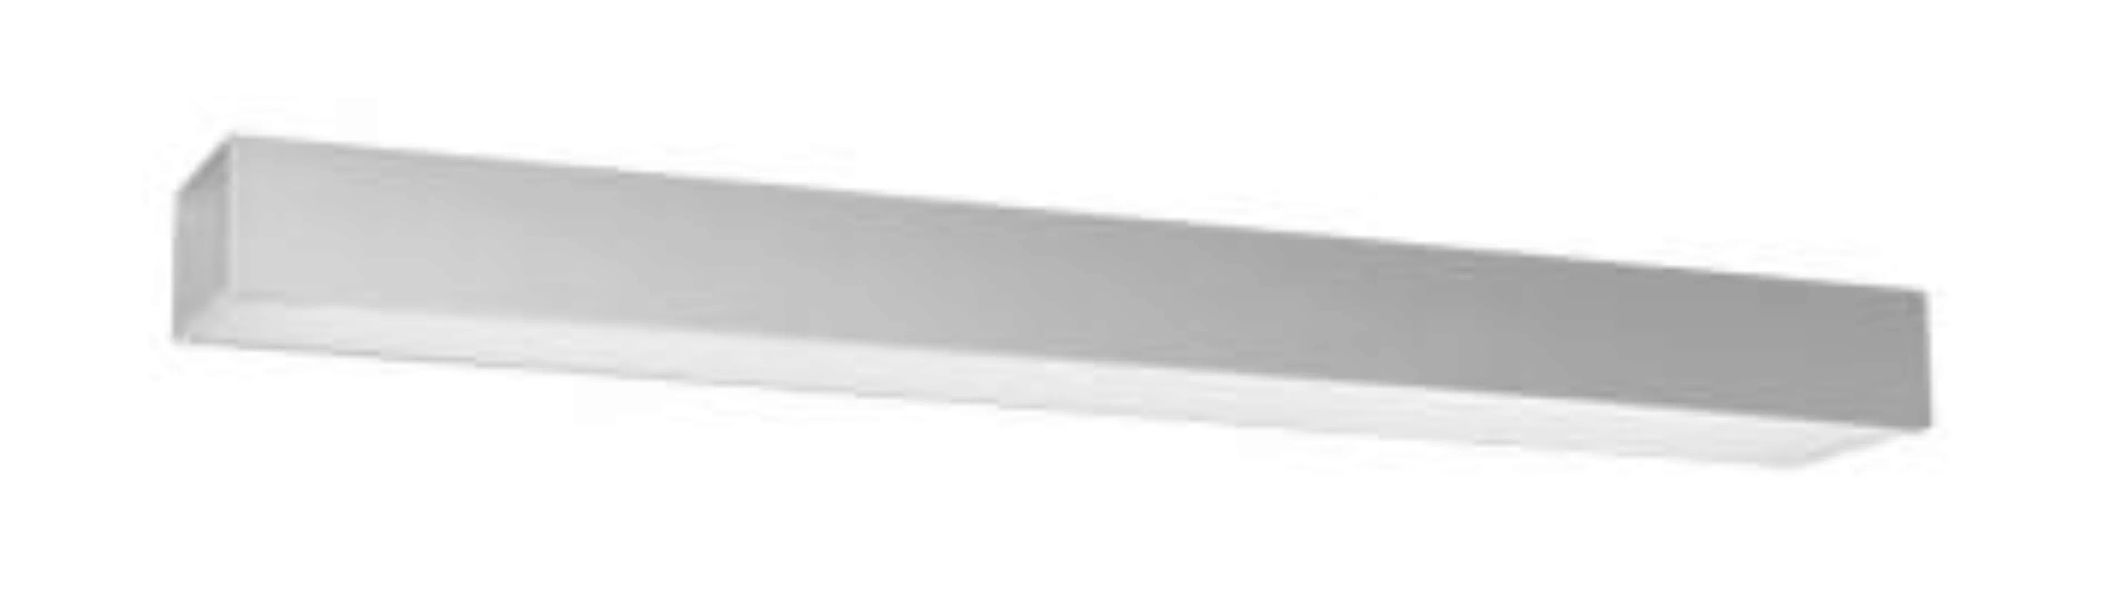 LED Deckenleuchte Grau Metall 4000 K 90 cm lang flach günstig online kaufen